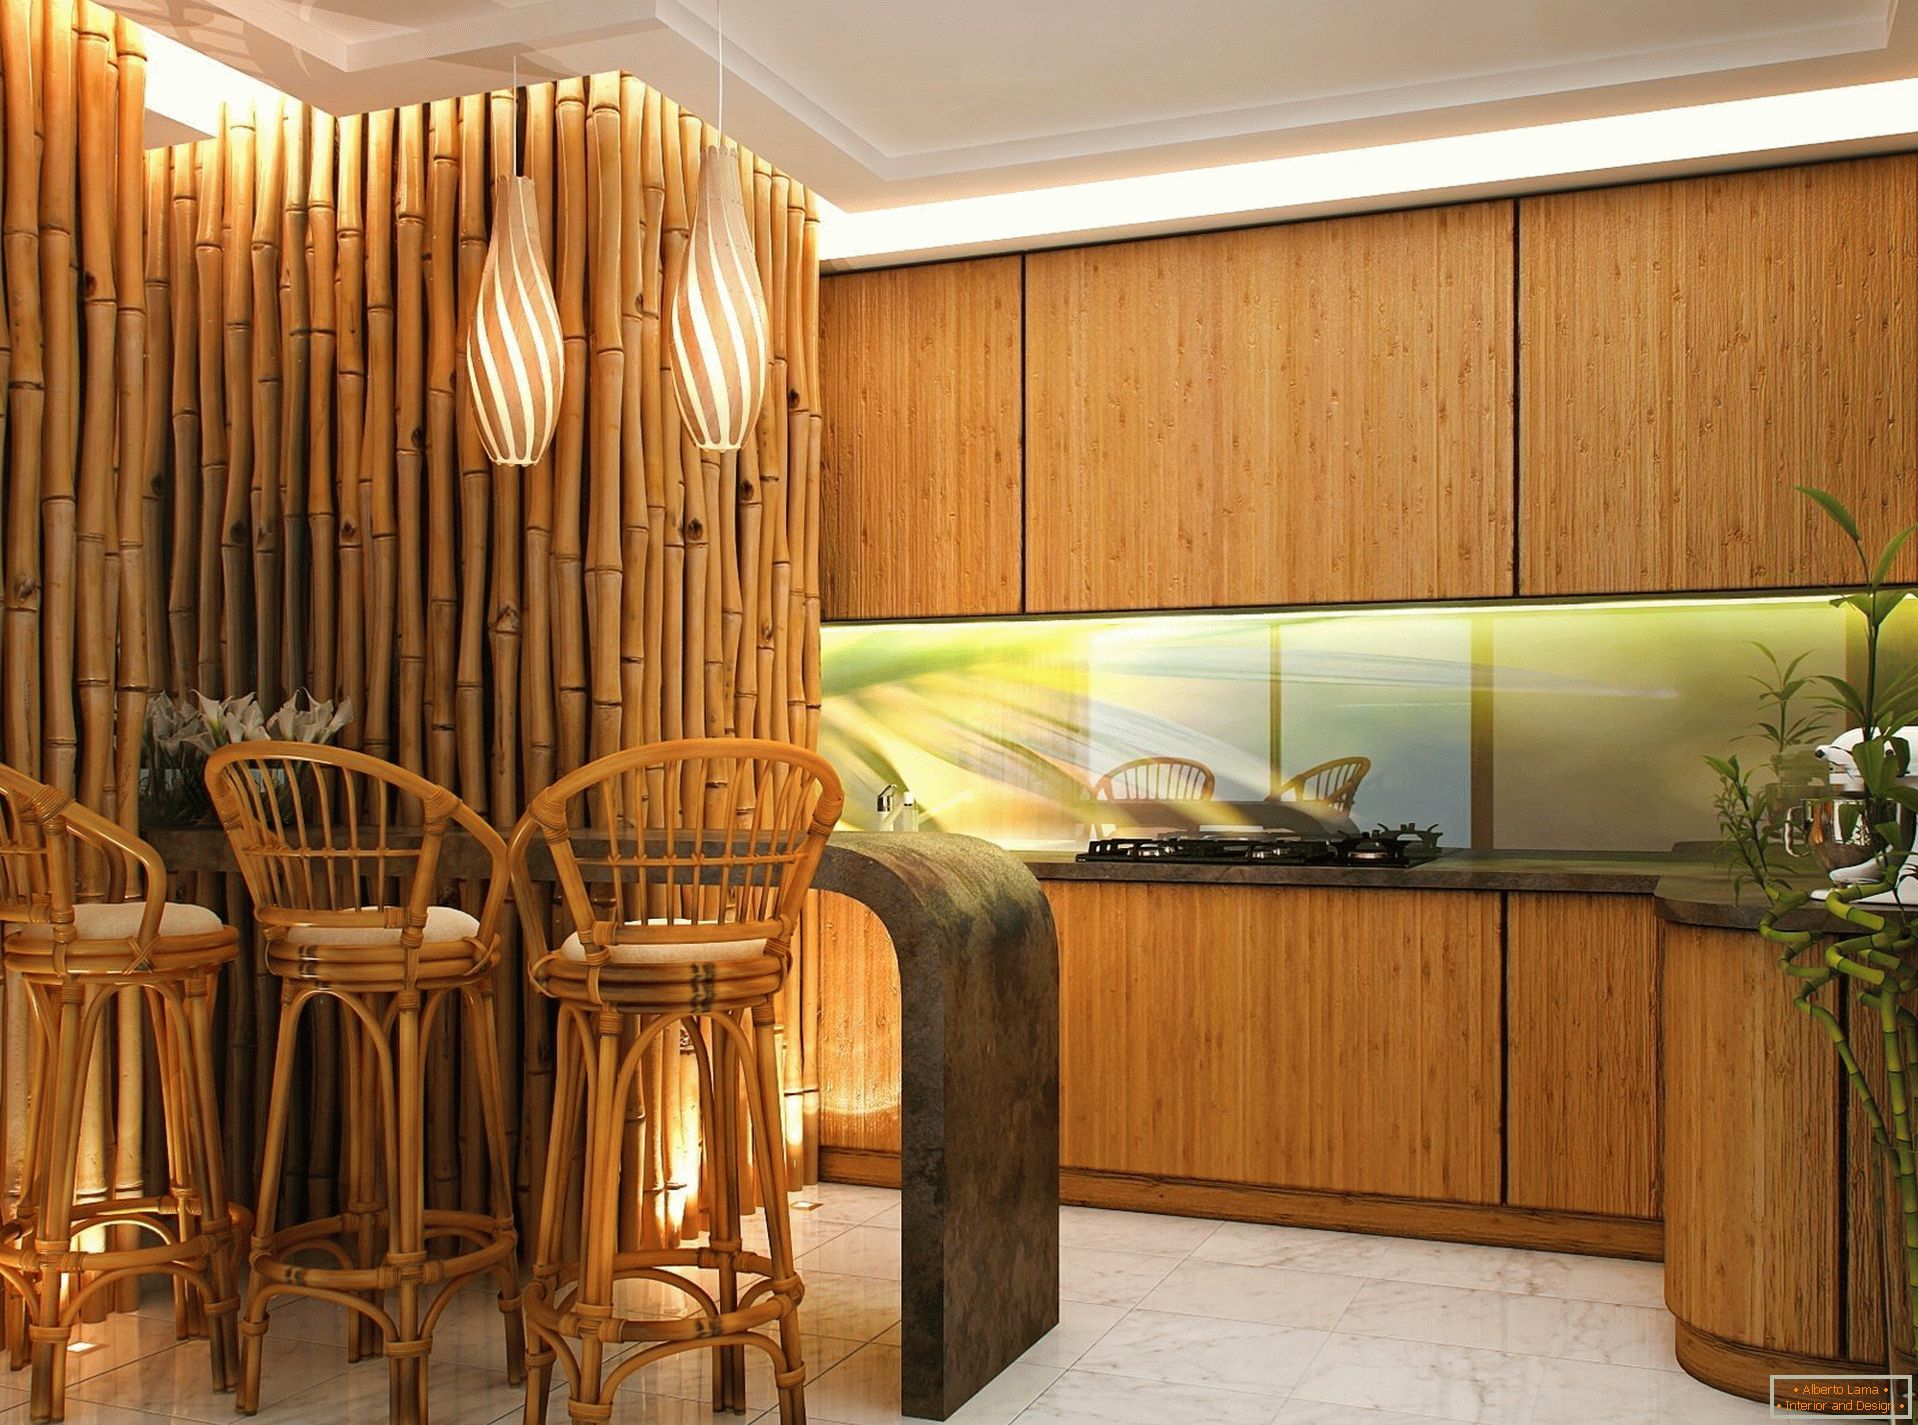 Ściany i krzesła wykonane z bambusa